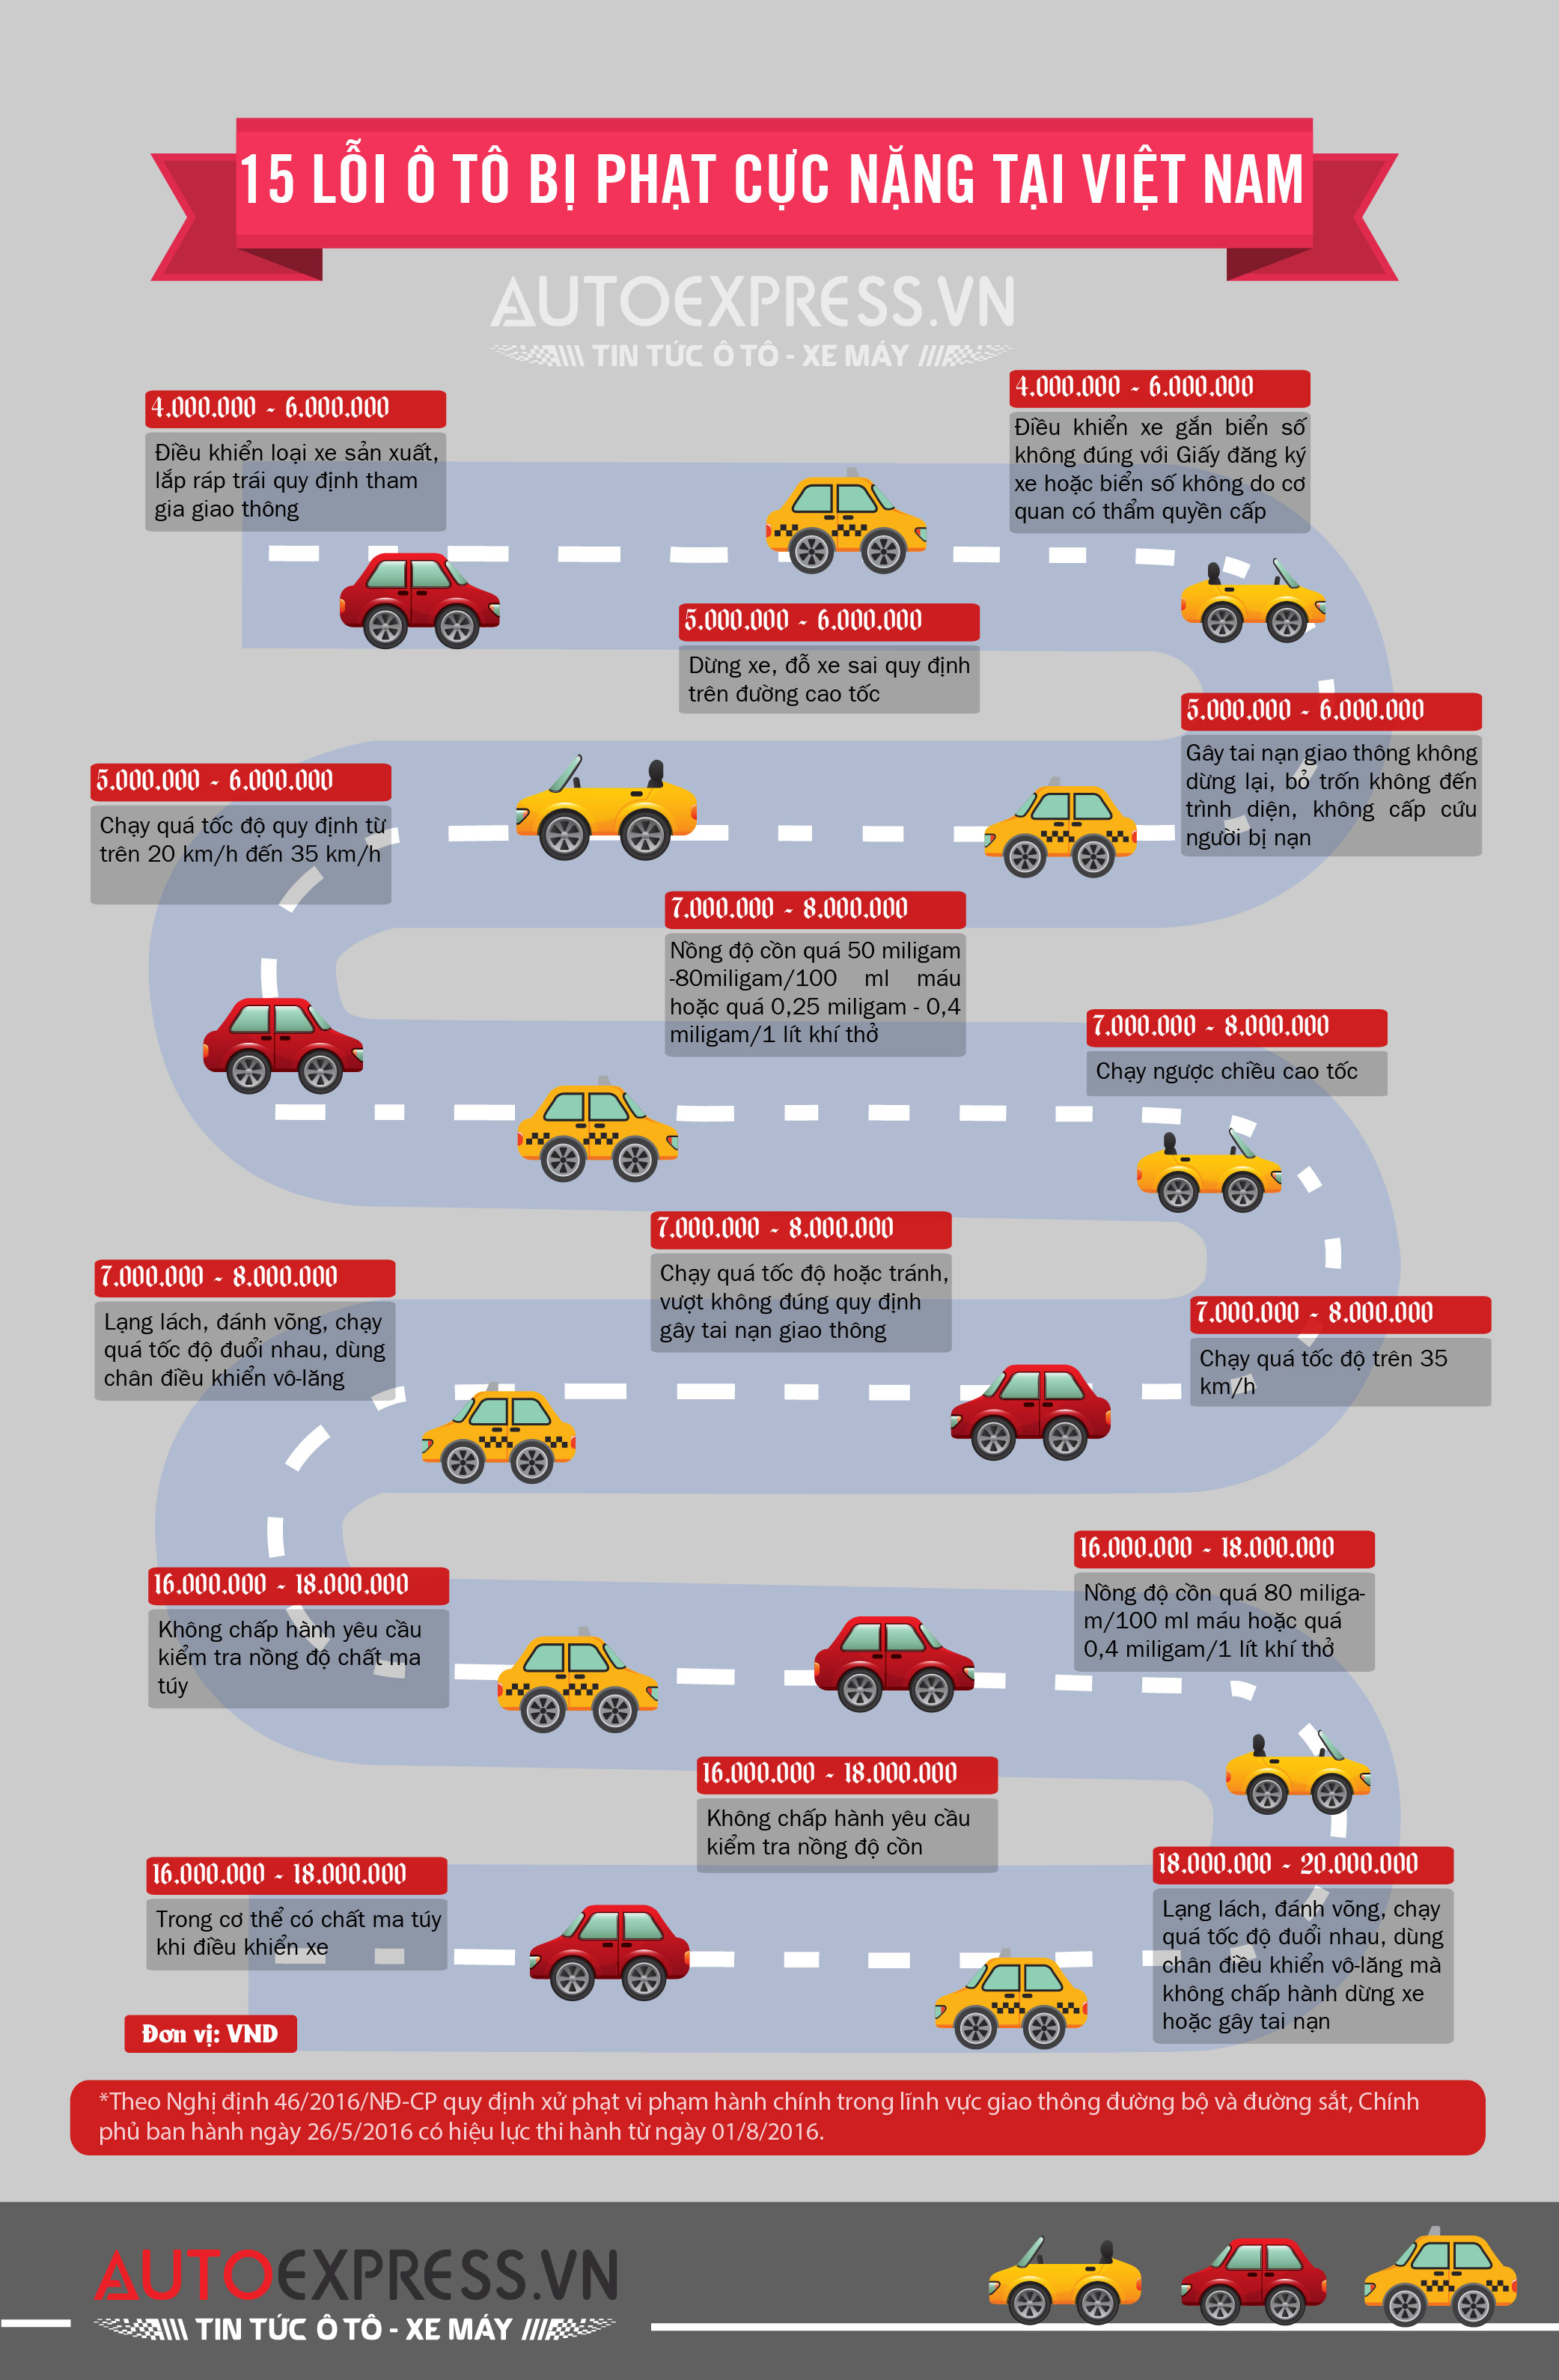 15 lỗi ô tô bạn sẽ bị phạt cực nặng khi vi phạm khi tham gia giao thông ở Việt Nam